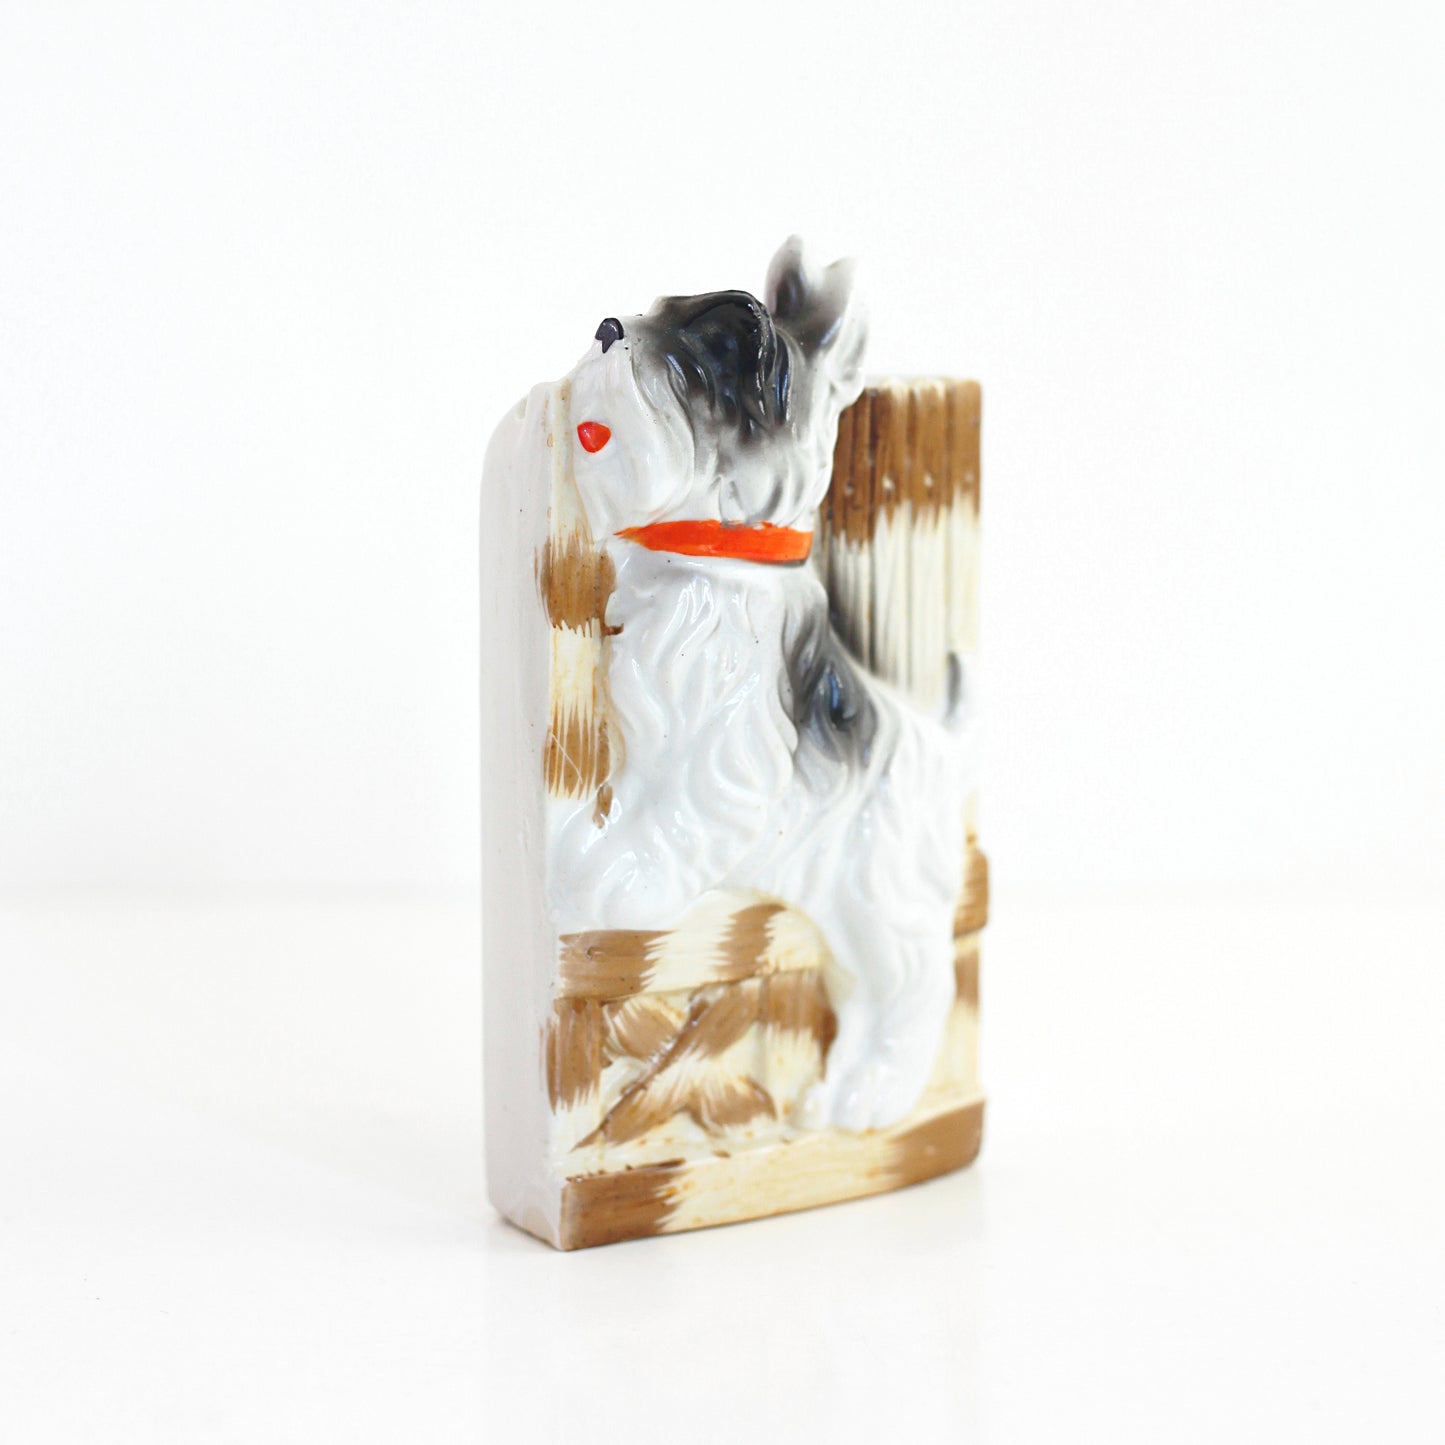 SOLD - Vintage Ceramic Dog Wall Pocket from Japan